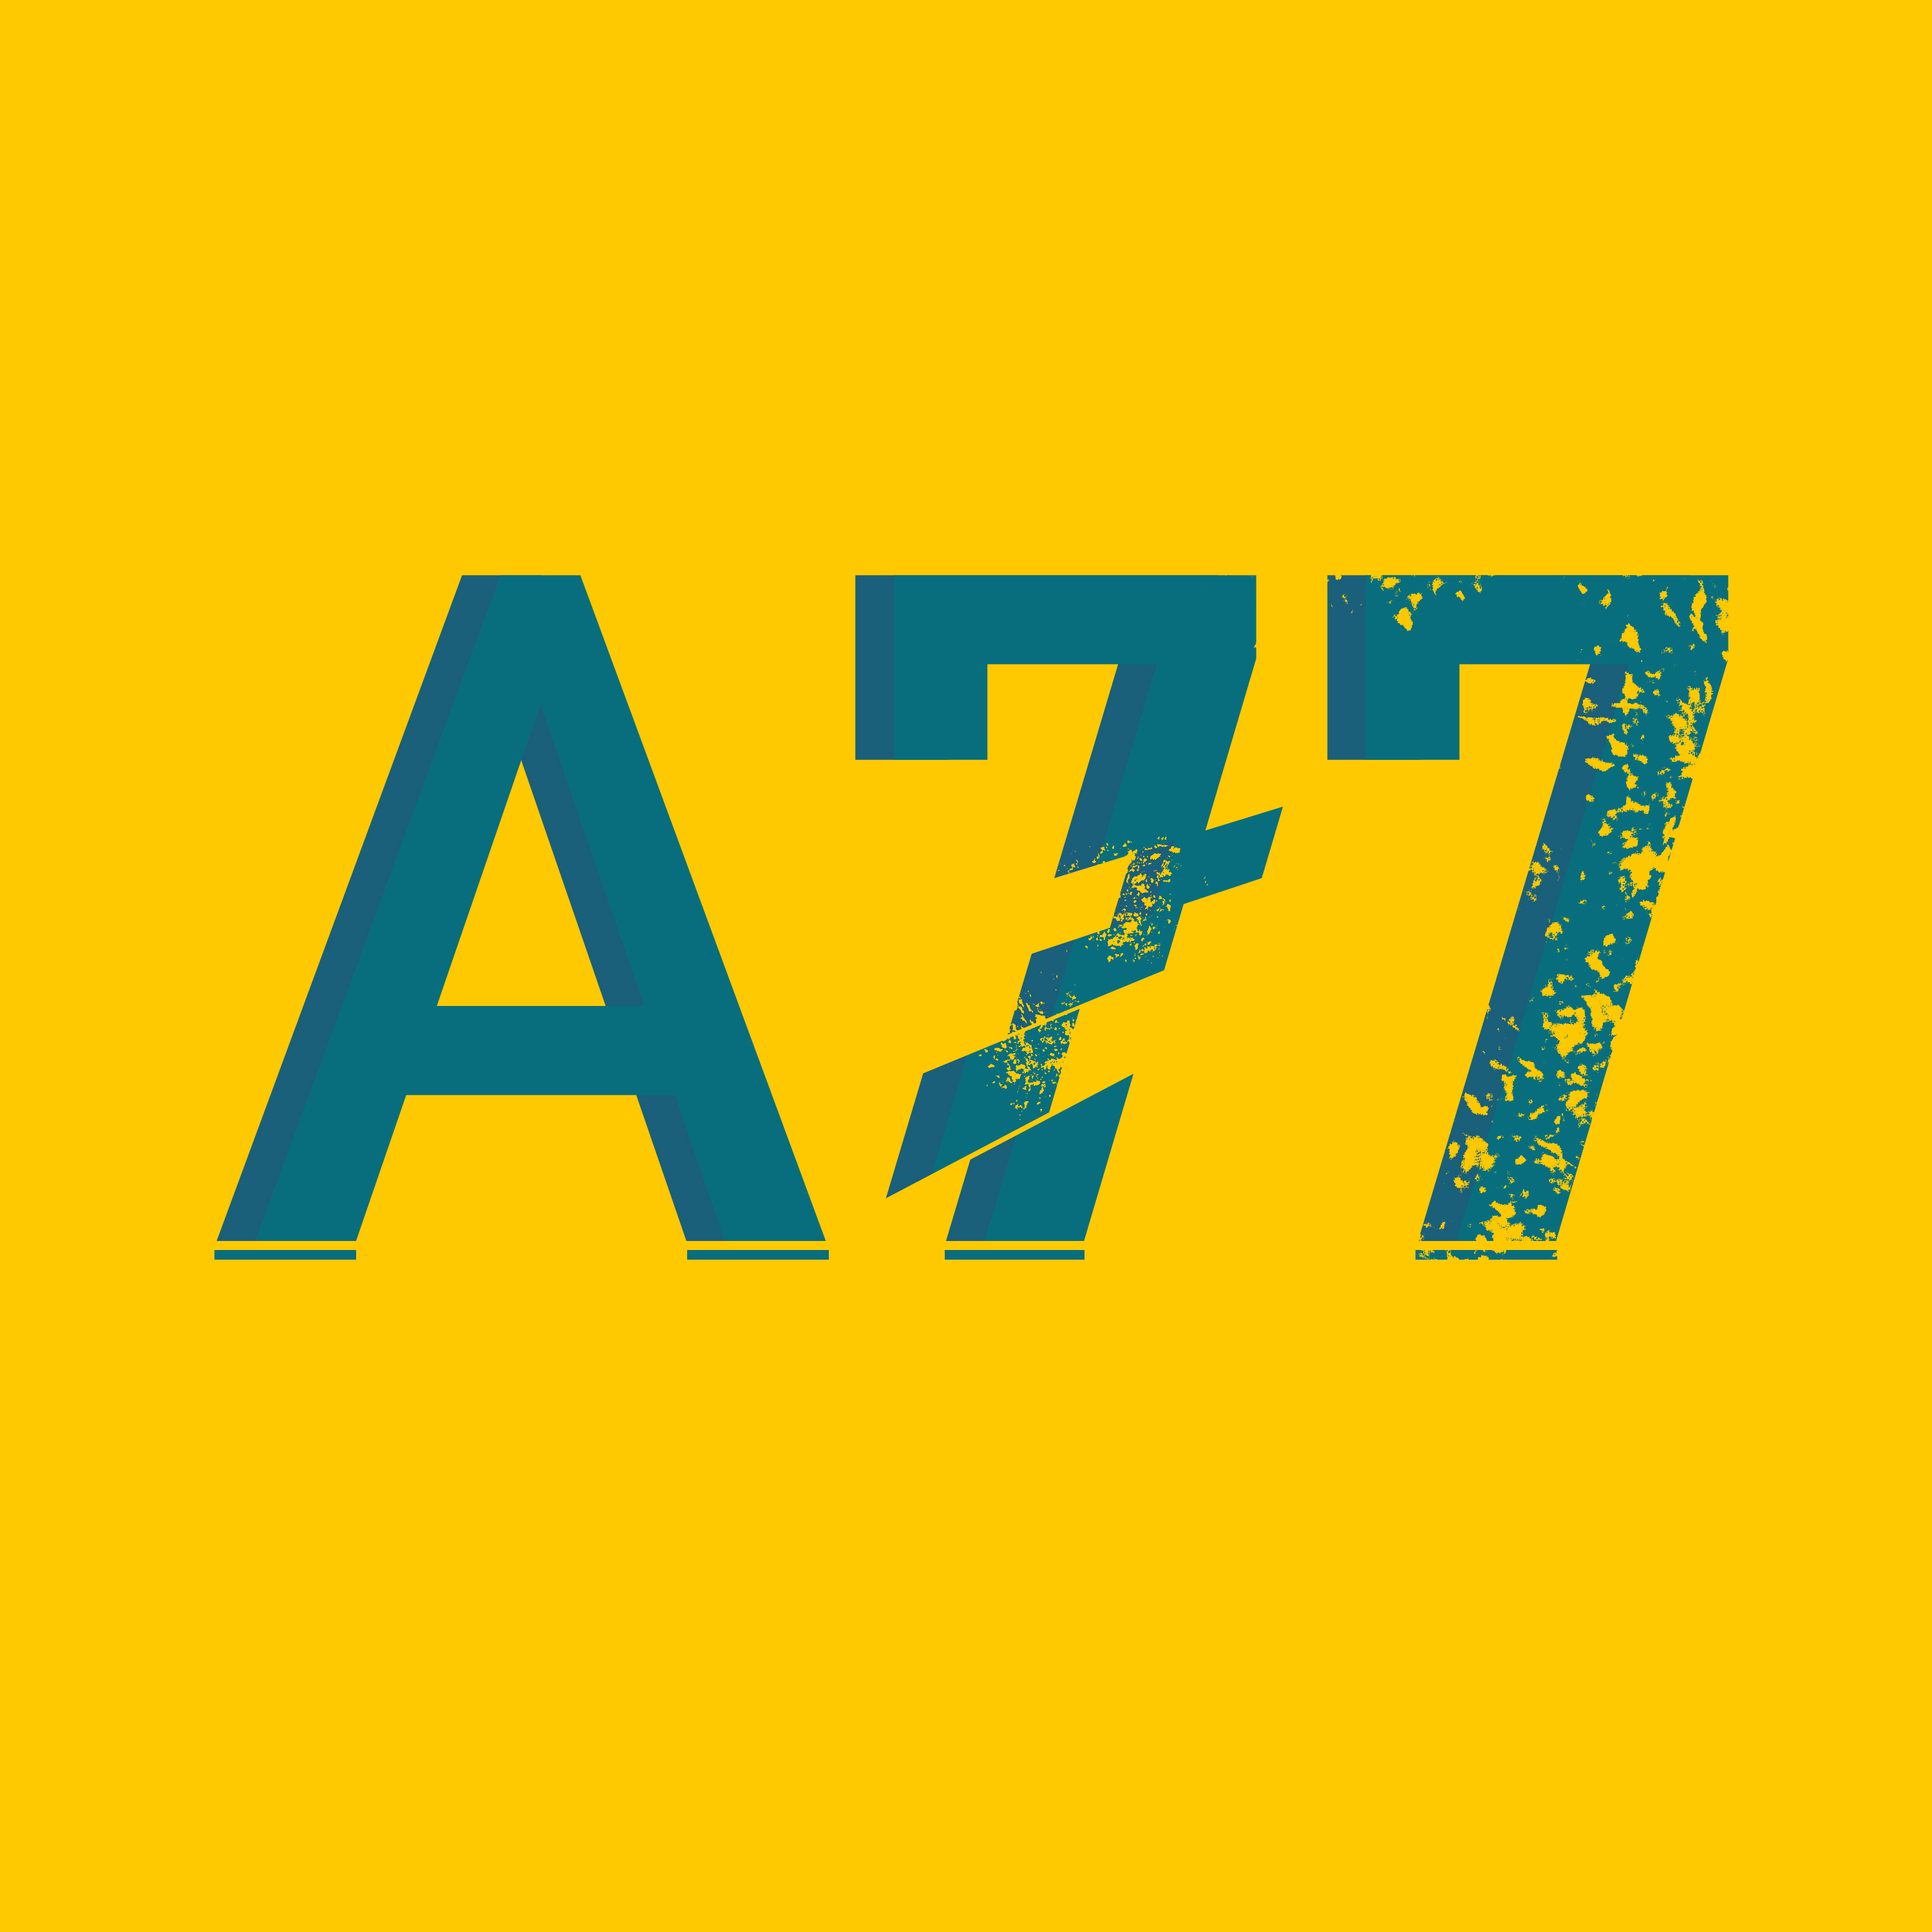 Ahmadinho 77